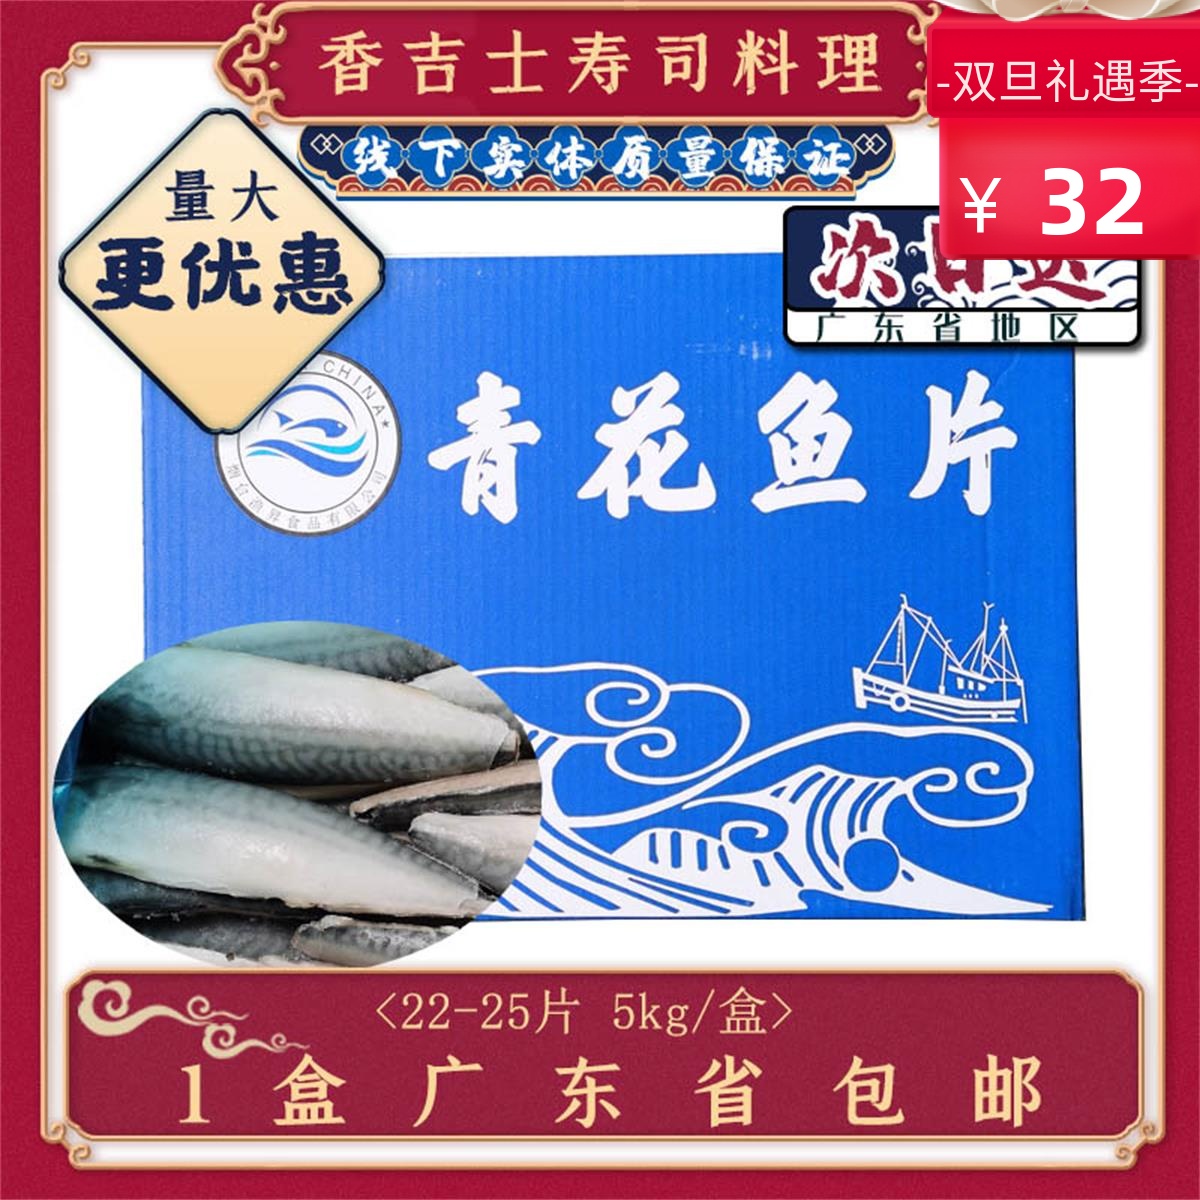 挪威青花鱼片冷冻生鲜海鲜烧烤用开边青花鱼盐渍青鱼片5kg